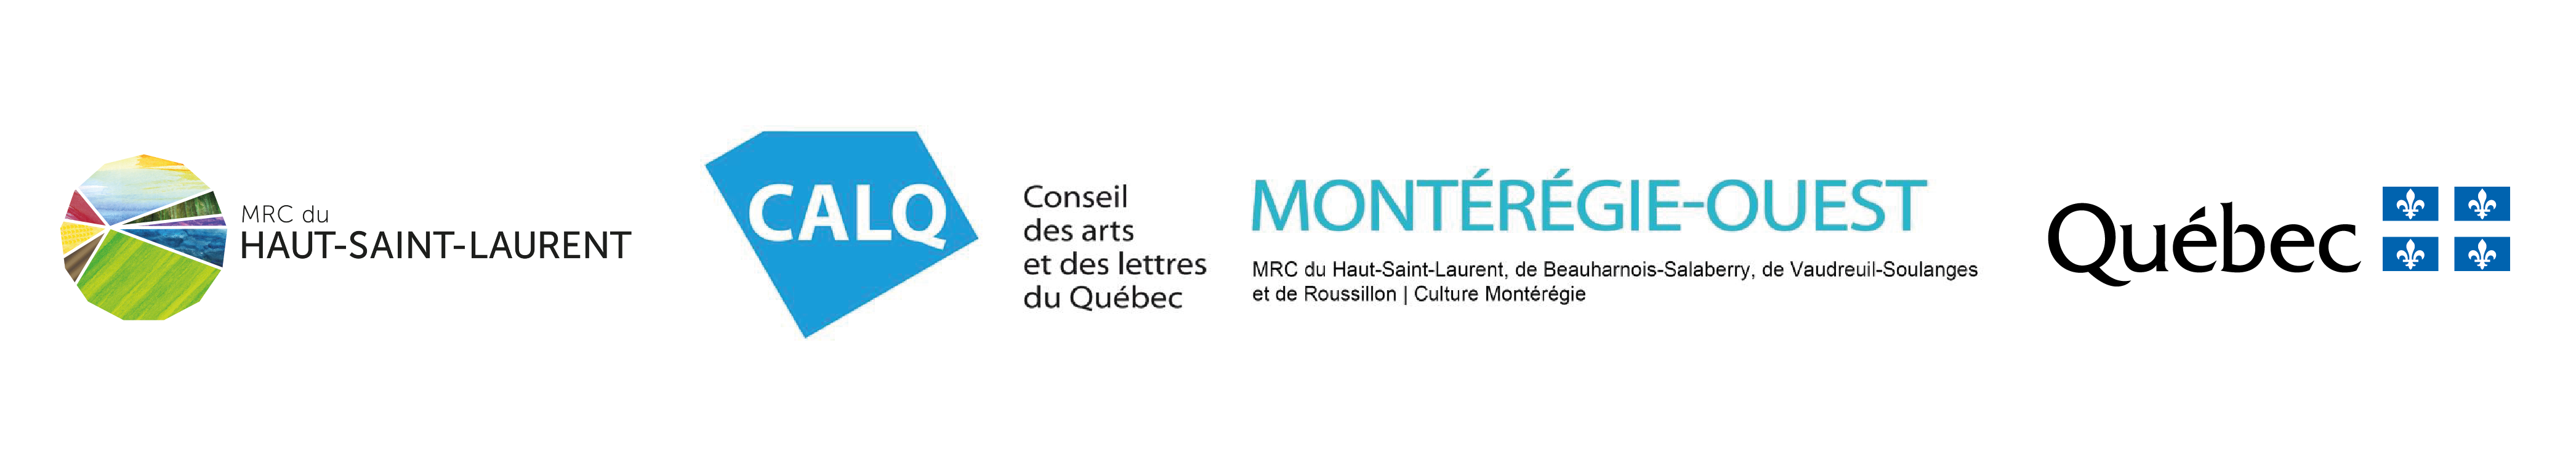 Bandeau-MRC-CALQ-Quebec_Plan-de-travail-1.png#asset:8589